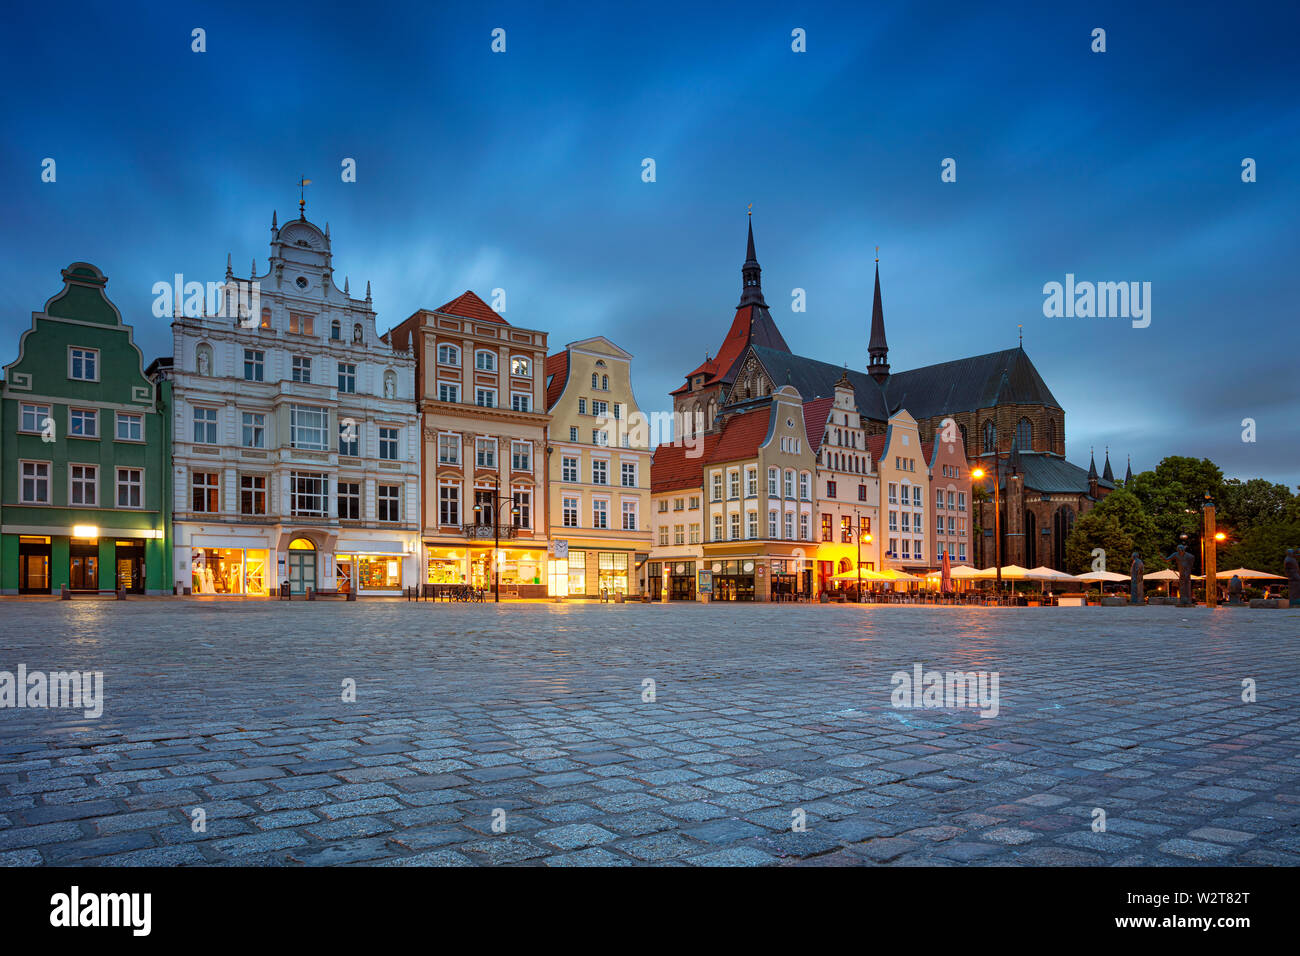 Rostock, Allemagne. Cityscape image de Rostock, Allemagne pendant le crépuscule heure bleue. Banque D'Images